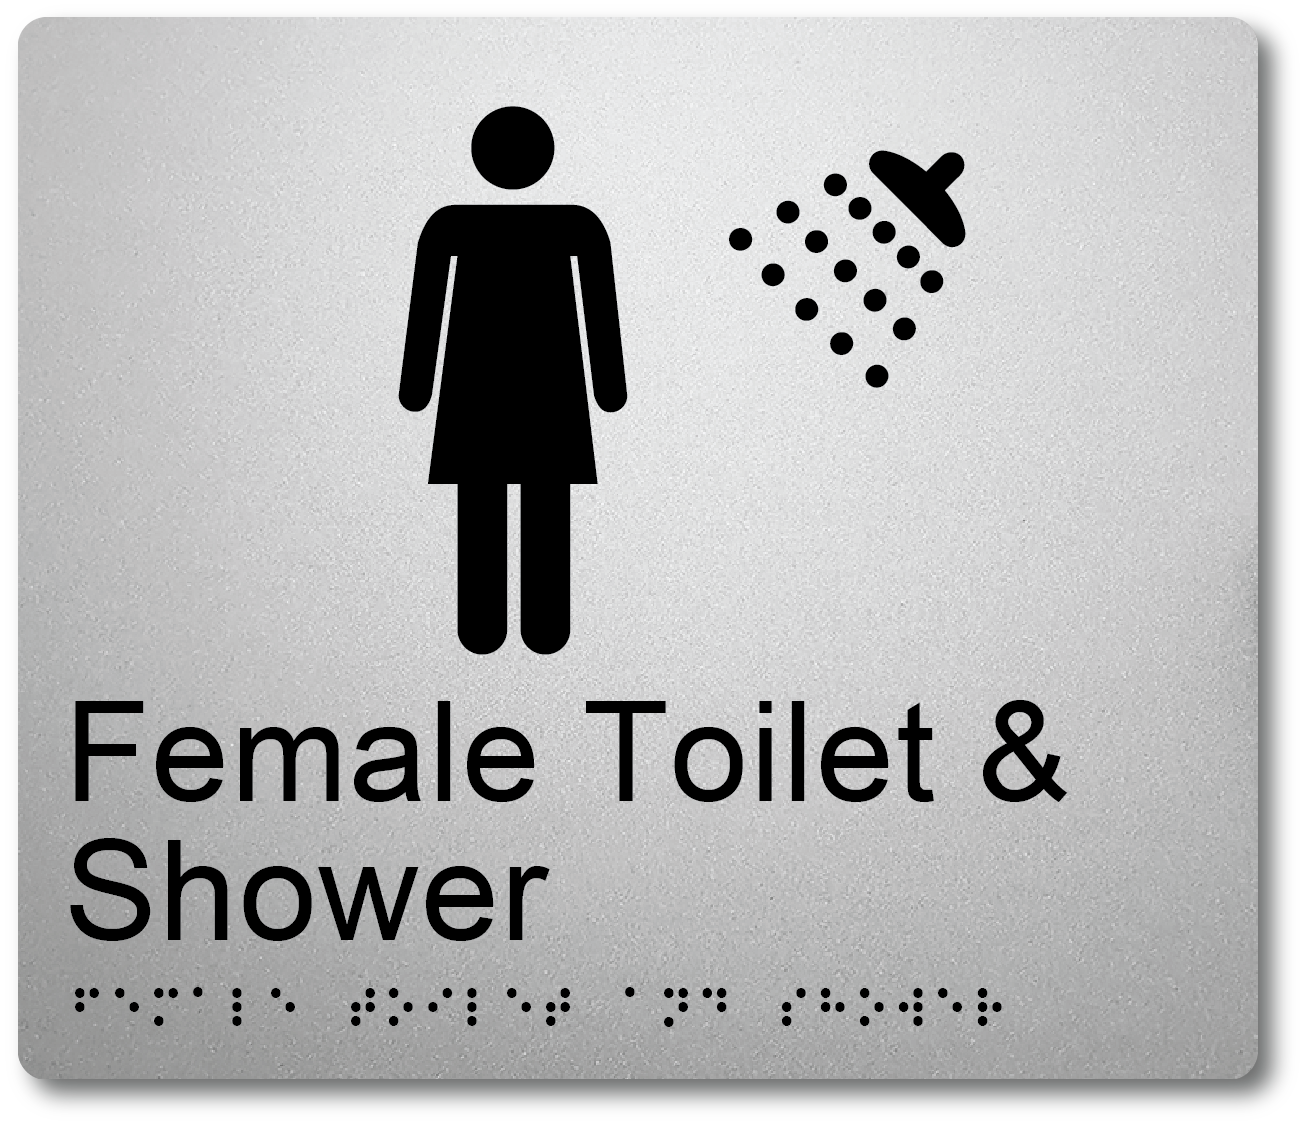 Female Toilet & Shower